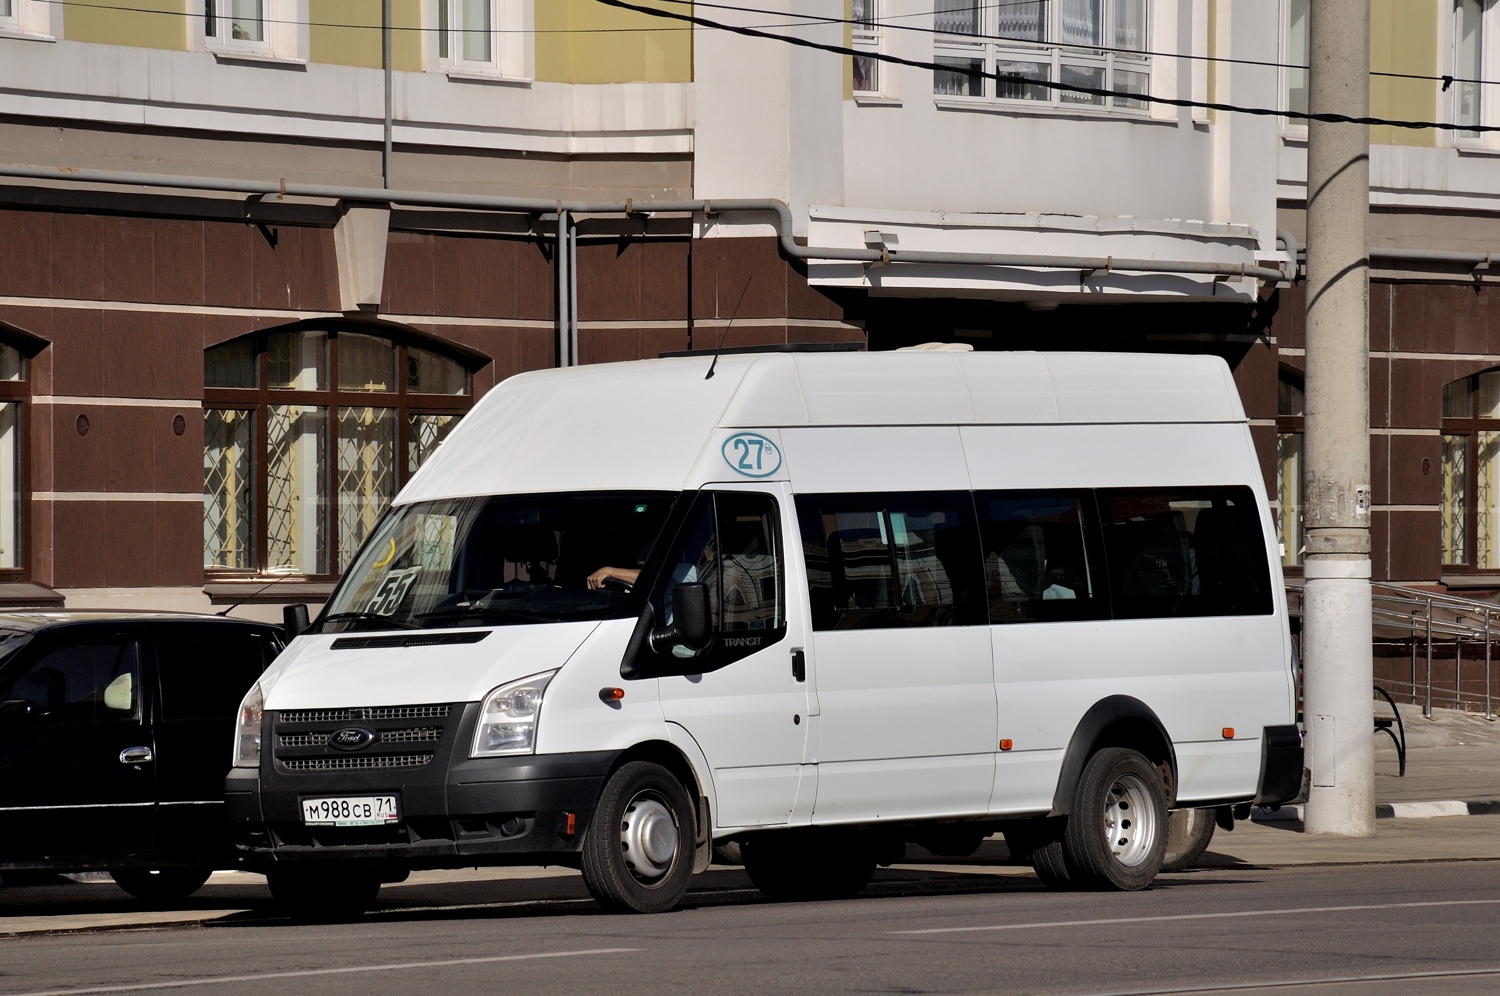 Tula, Имя-М-3006 (Z9S) (Ford Transit) # М 988 СВ 71